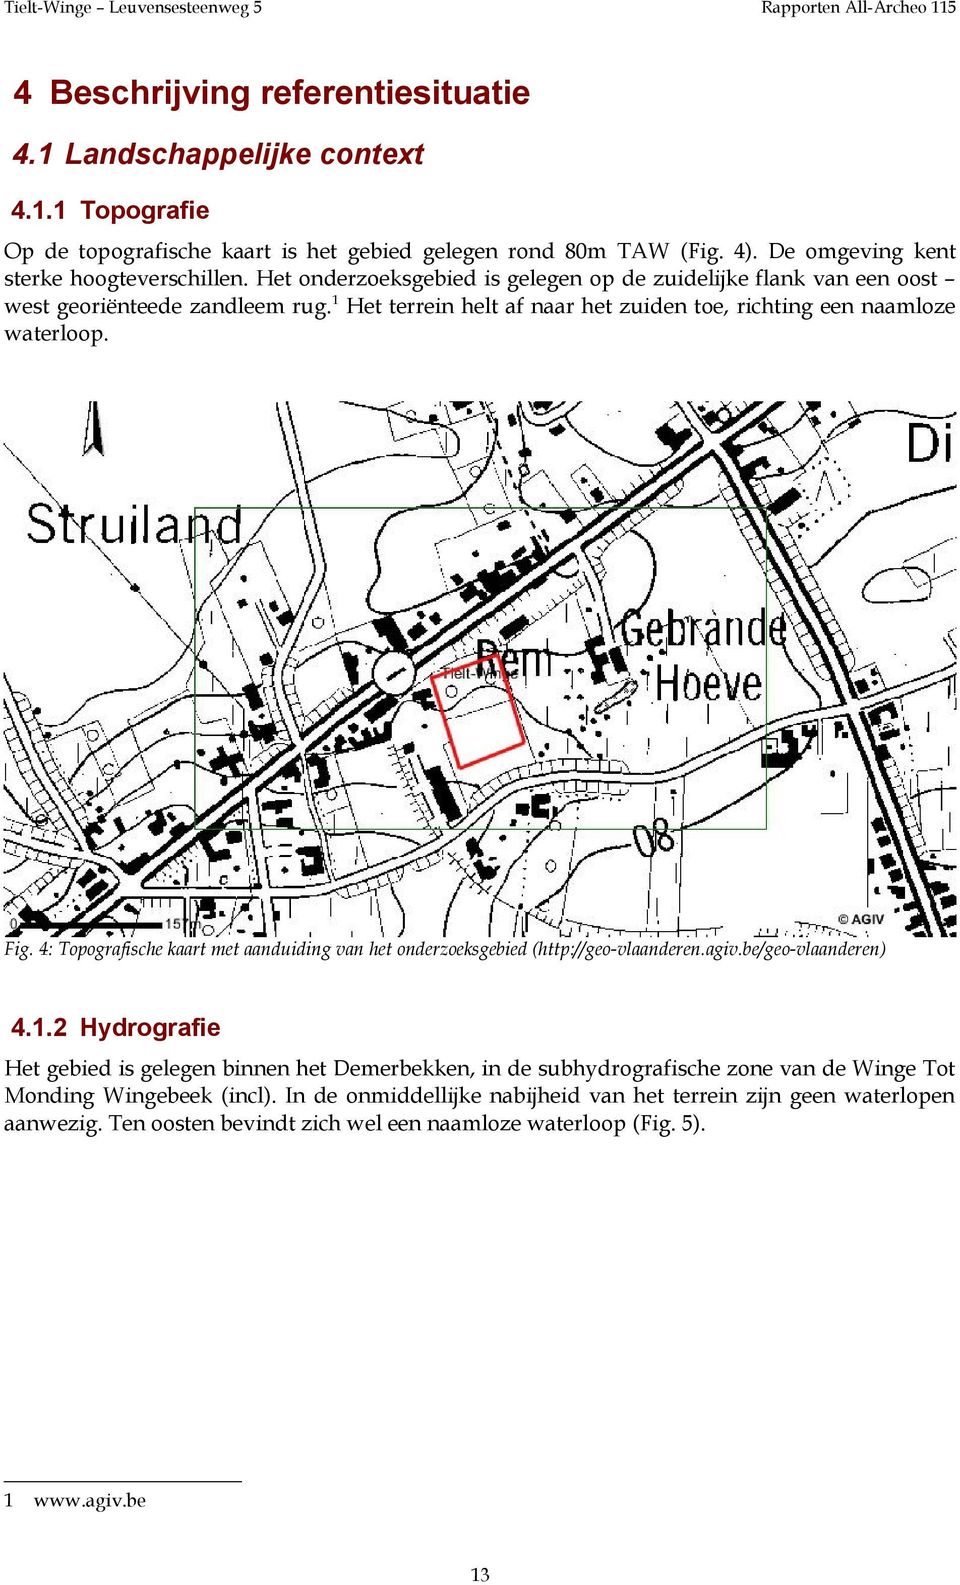 4: Topografische kaart met aanduiding van het onderzoeksgebied (http://geo-vlaanderen.agiv.be/geo-vlaanderen) 4.1.